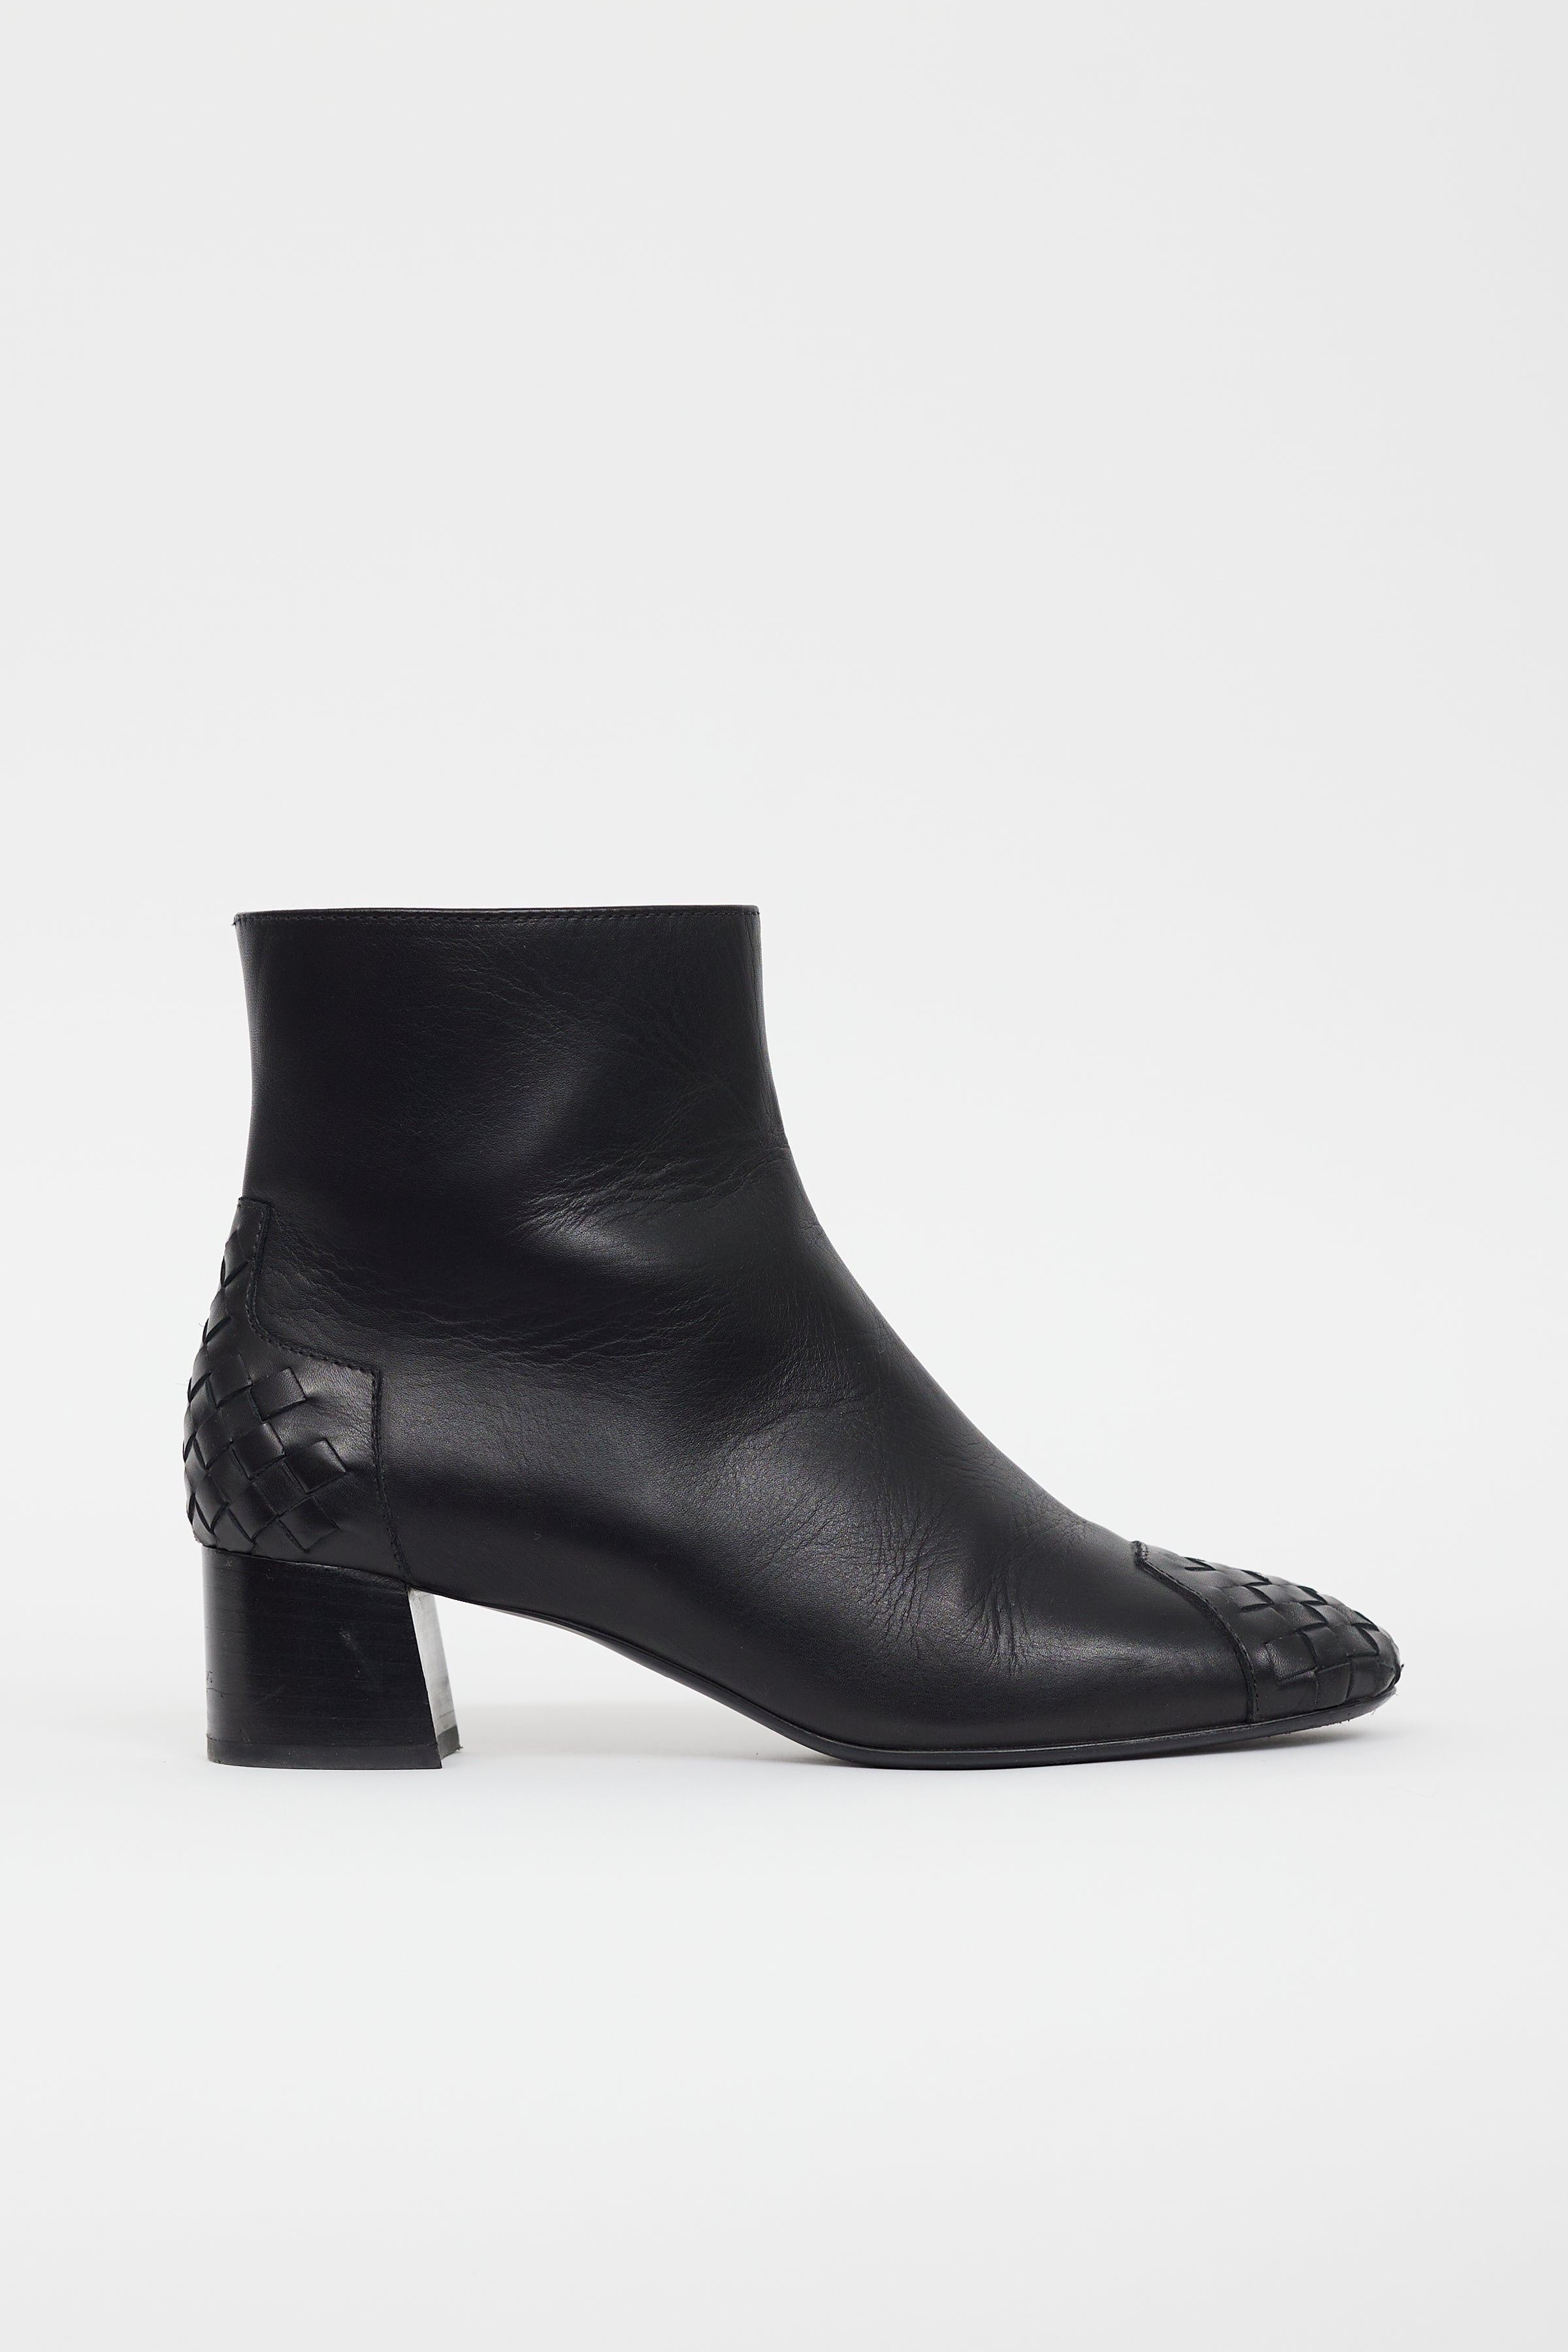 Bottega Veneta // Black Leather Intrecciato Ankle Boot – VSP